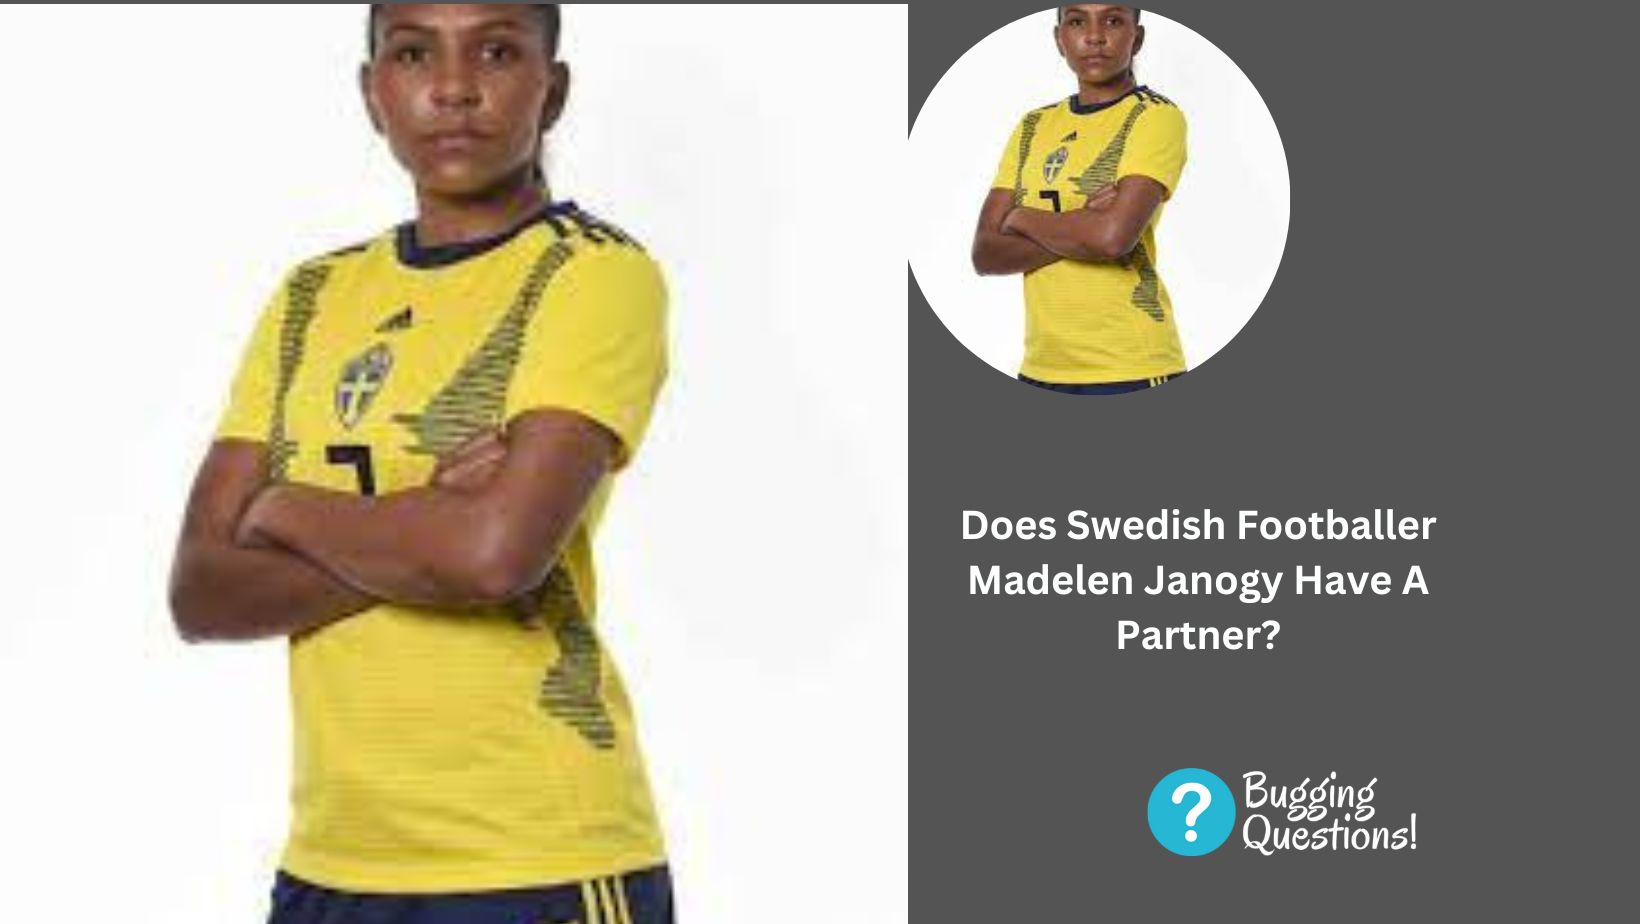 Does Swedish Footballer Madelen Janogy Have A Partner?